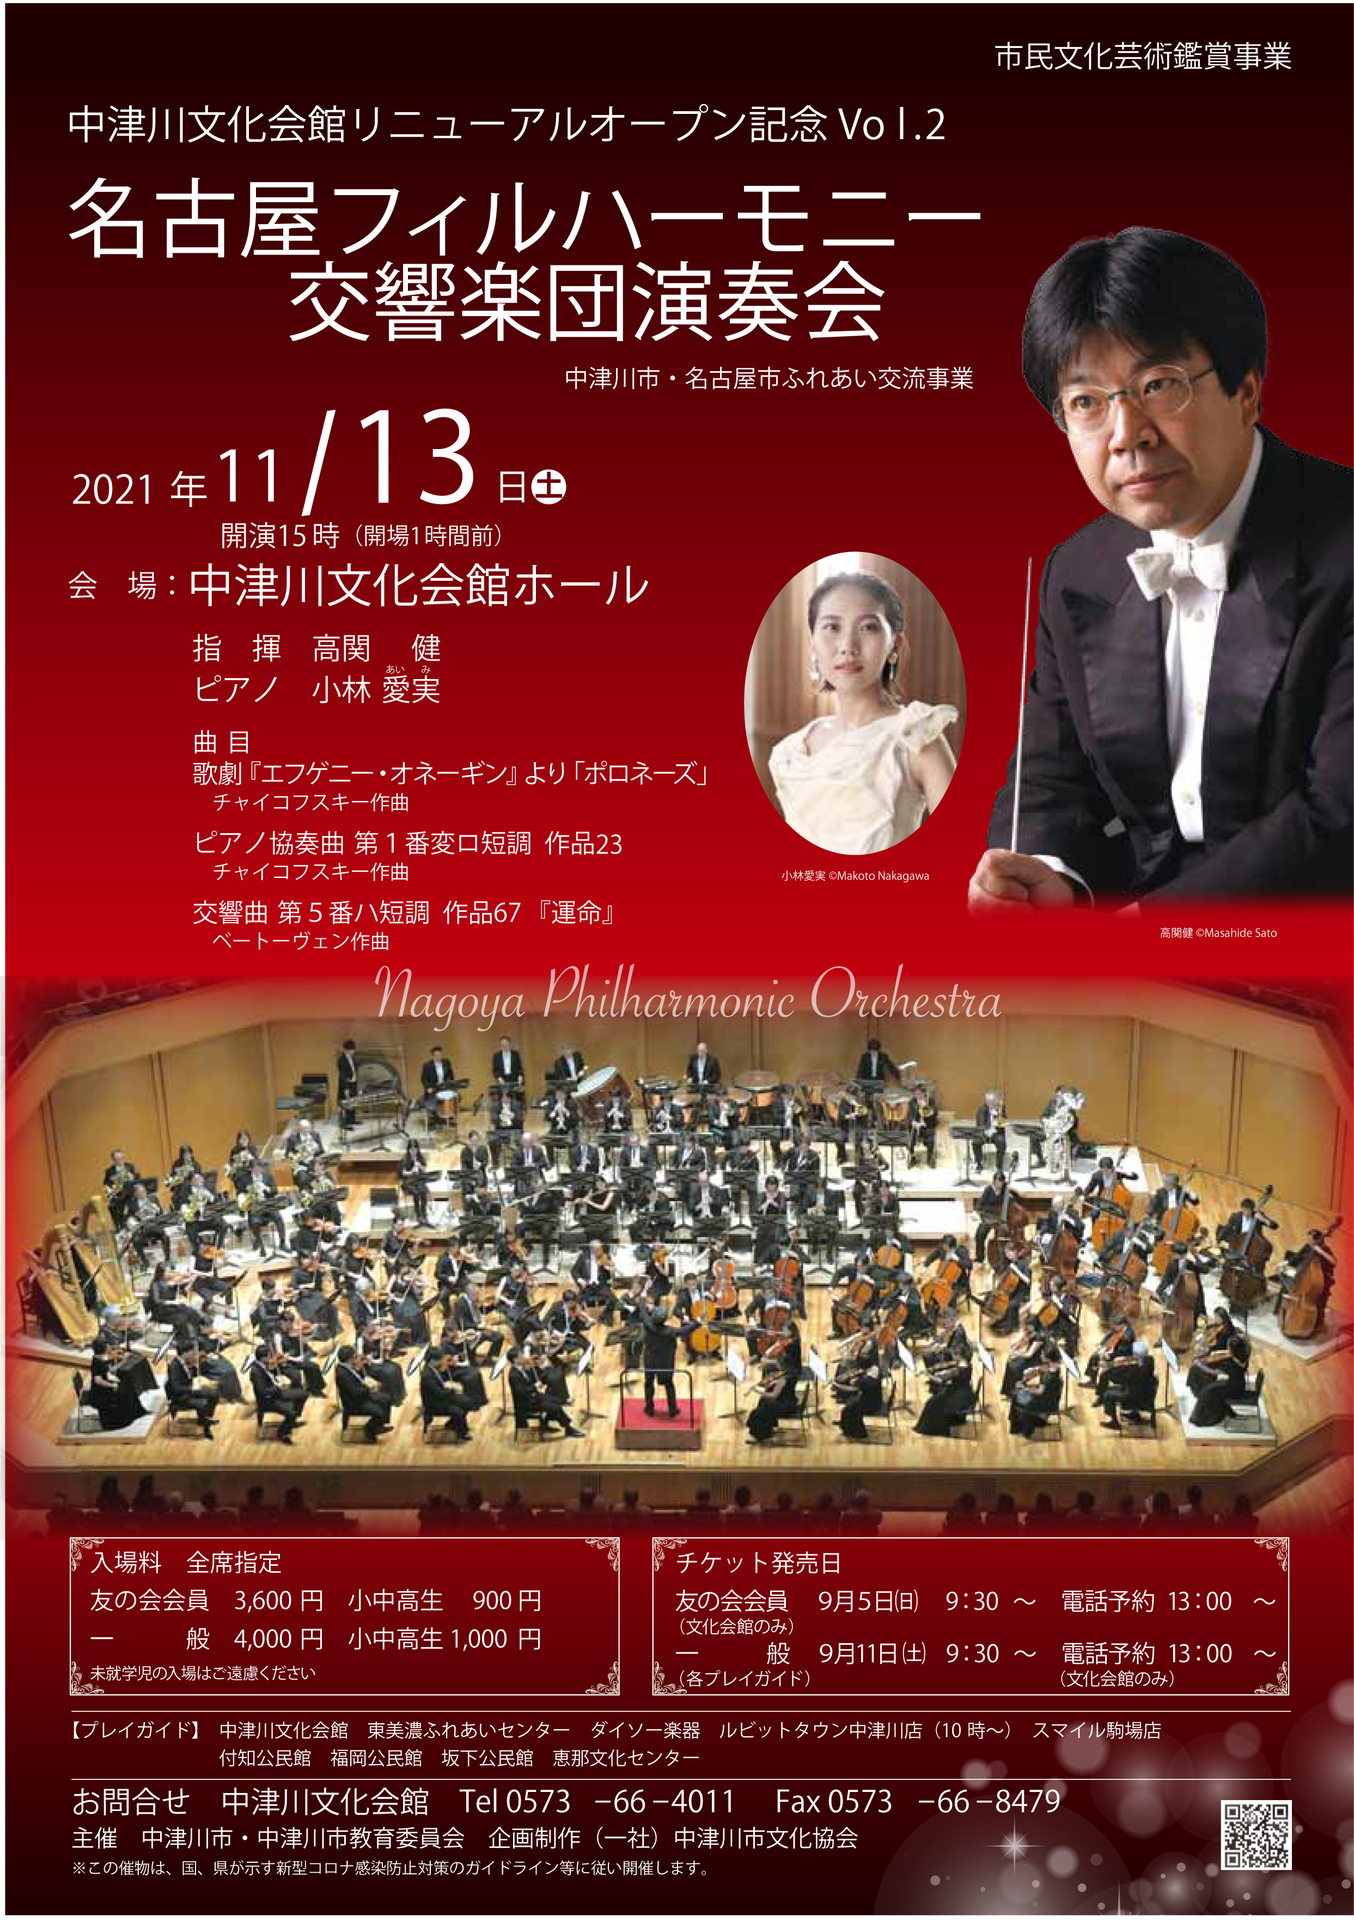 名古屋フィルハーモニー交響楽団演奏会のチケット発売日のご案内